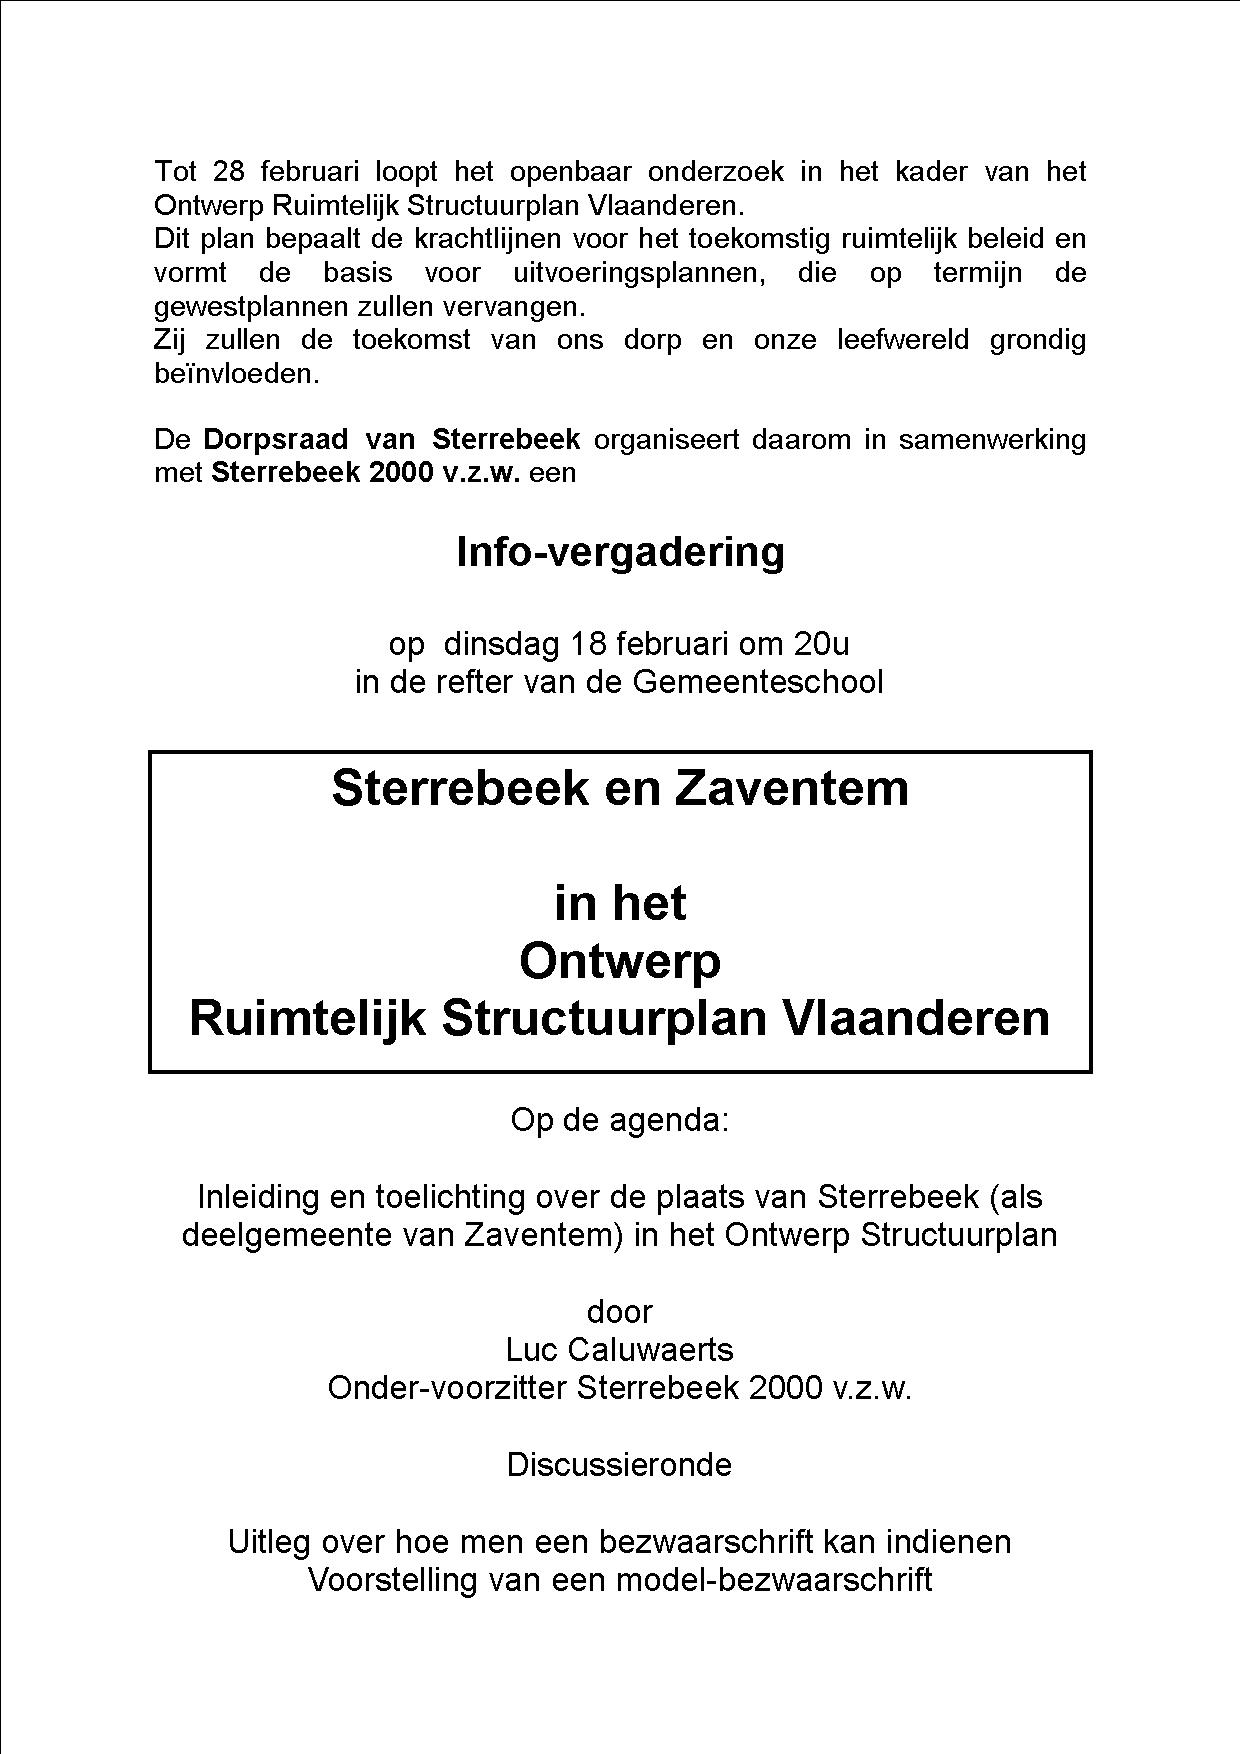 Infoavond over het structuurplan Vlaanderen: STERREBEEK 2000 roept op om bezwaar in te dienen